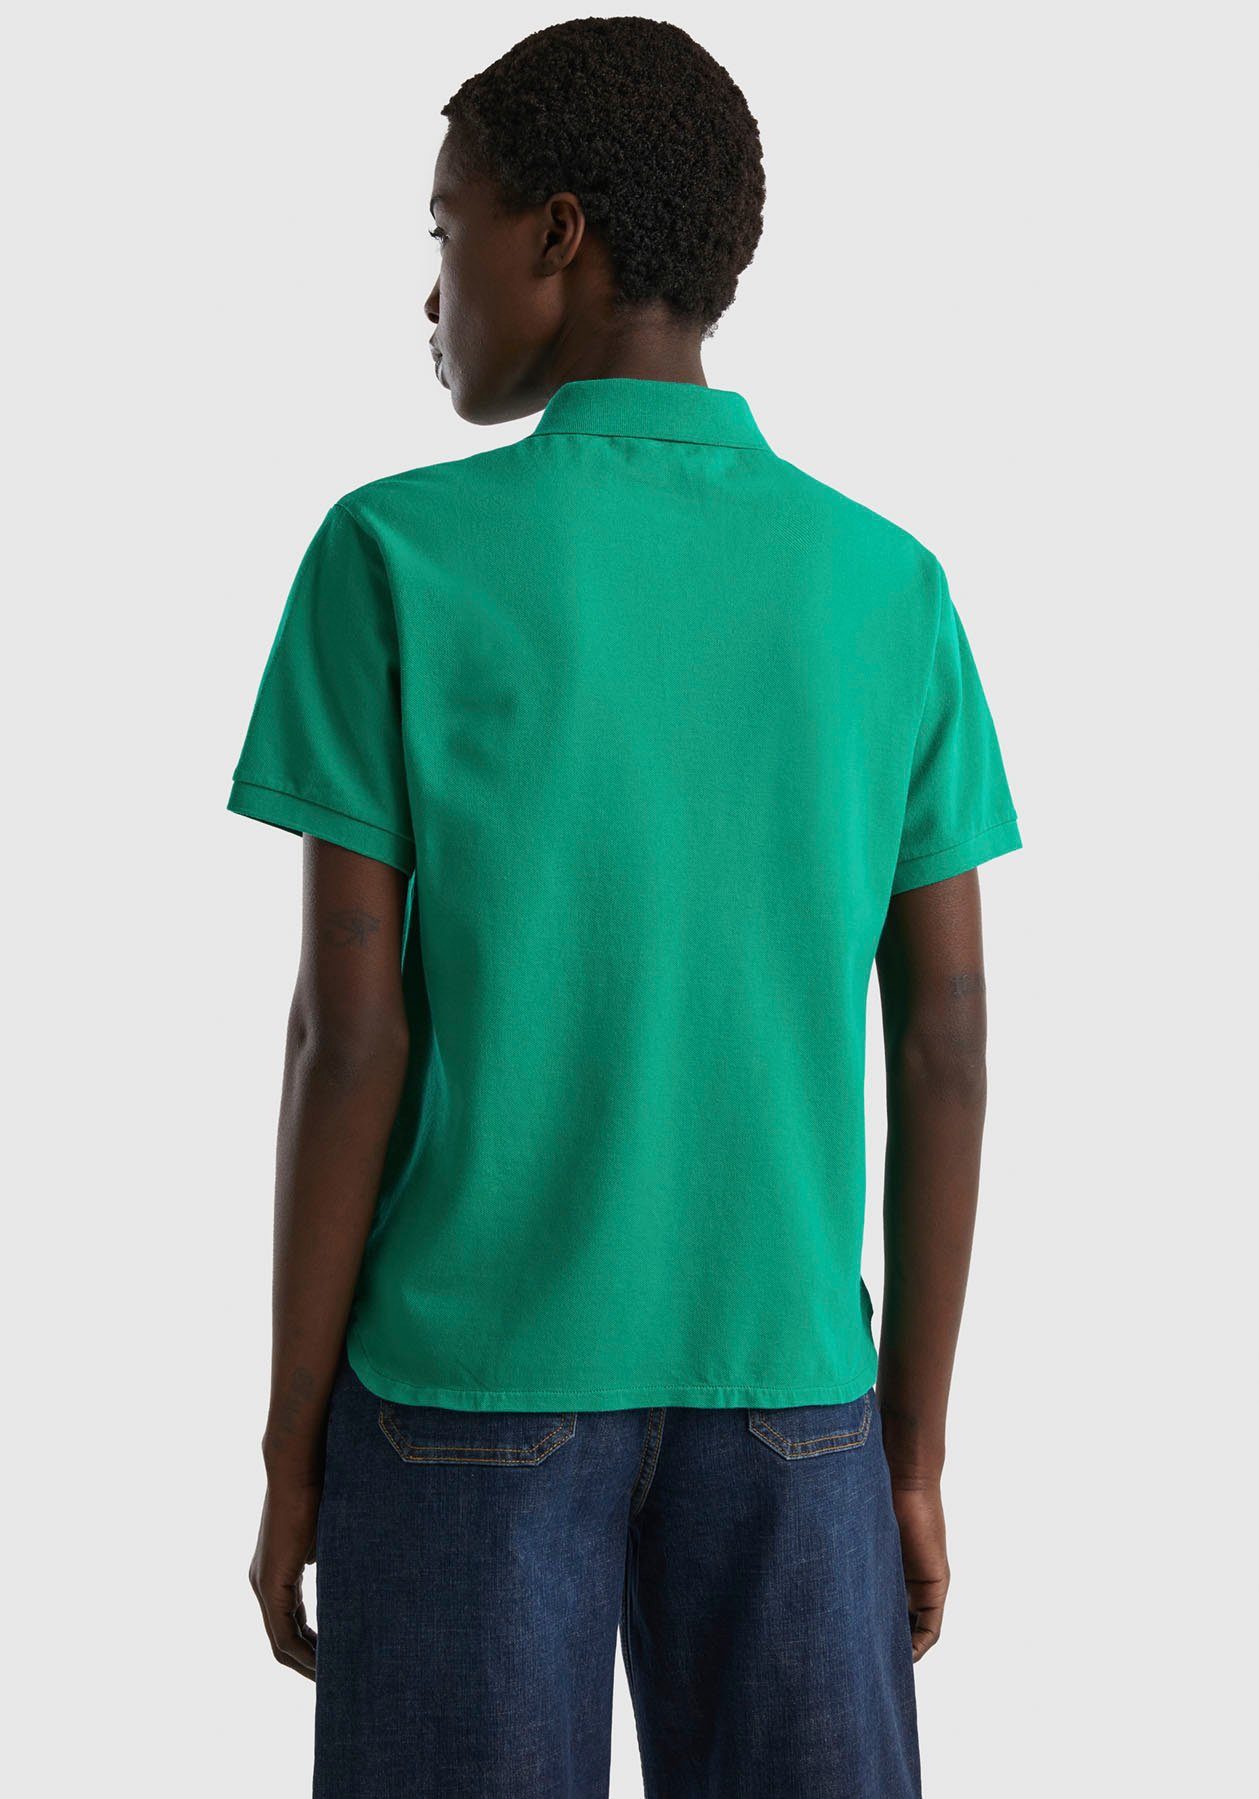 Poloshirt Knöpfen mit United grün perlmuttfarbenen Colors Benetton of